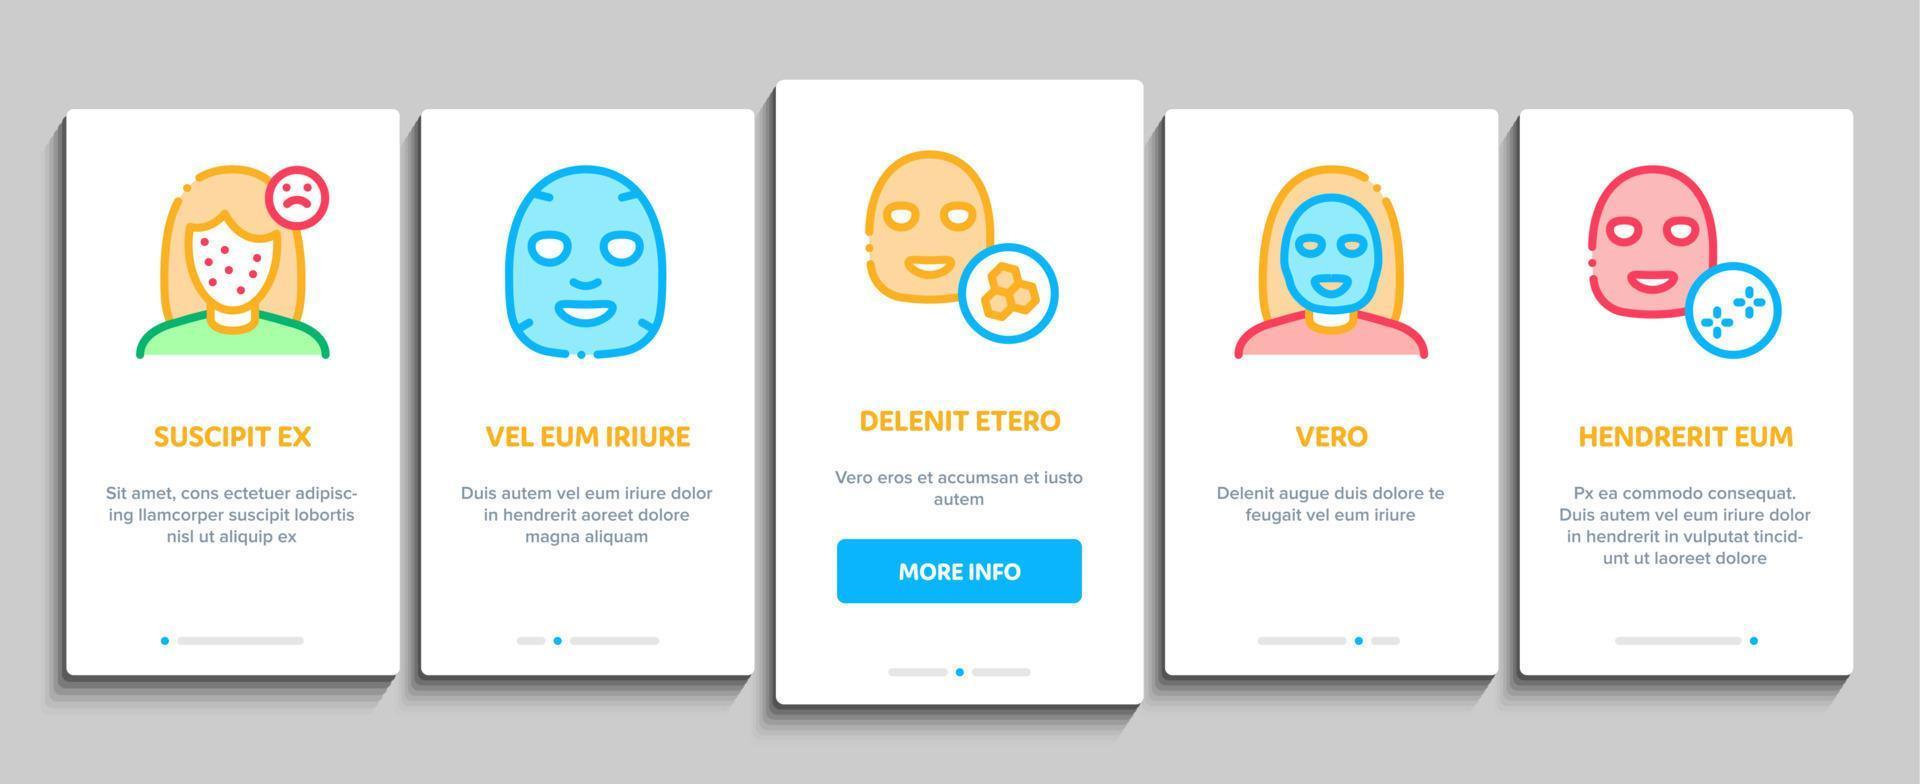 ansiktsbehandling mask sjukvård onboarding element ikoner uppsättning vektor